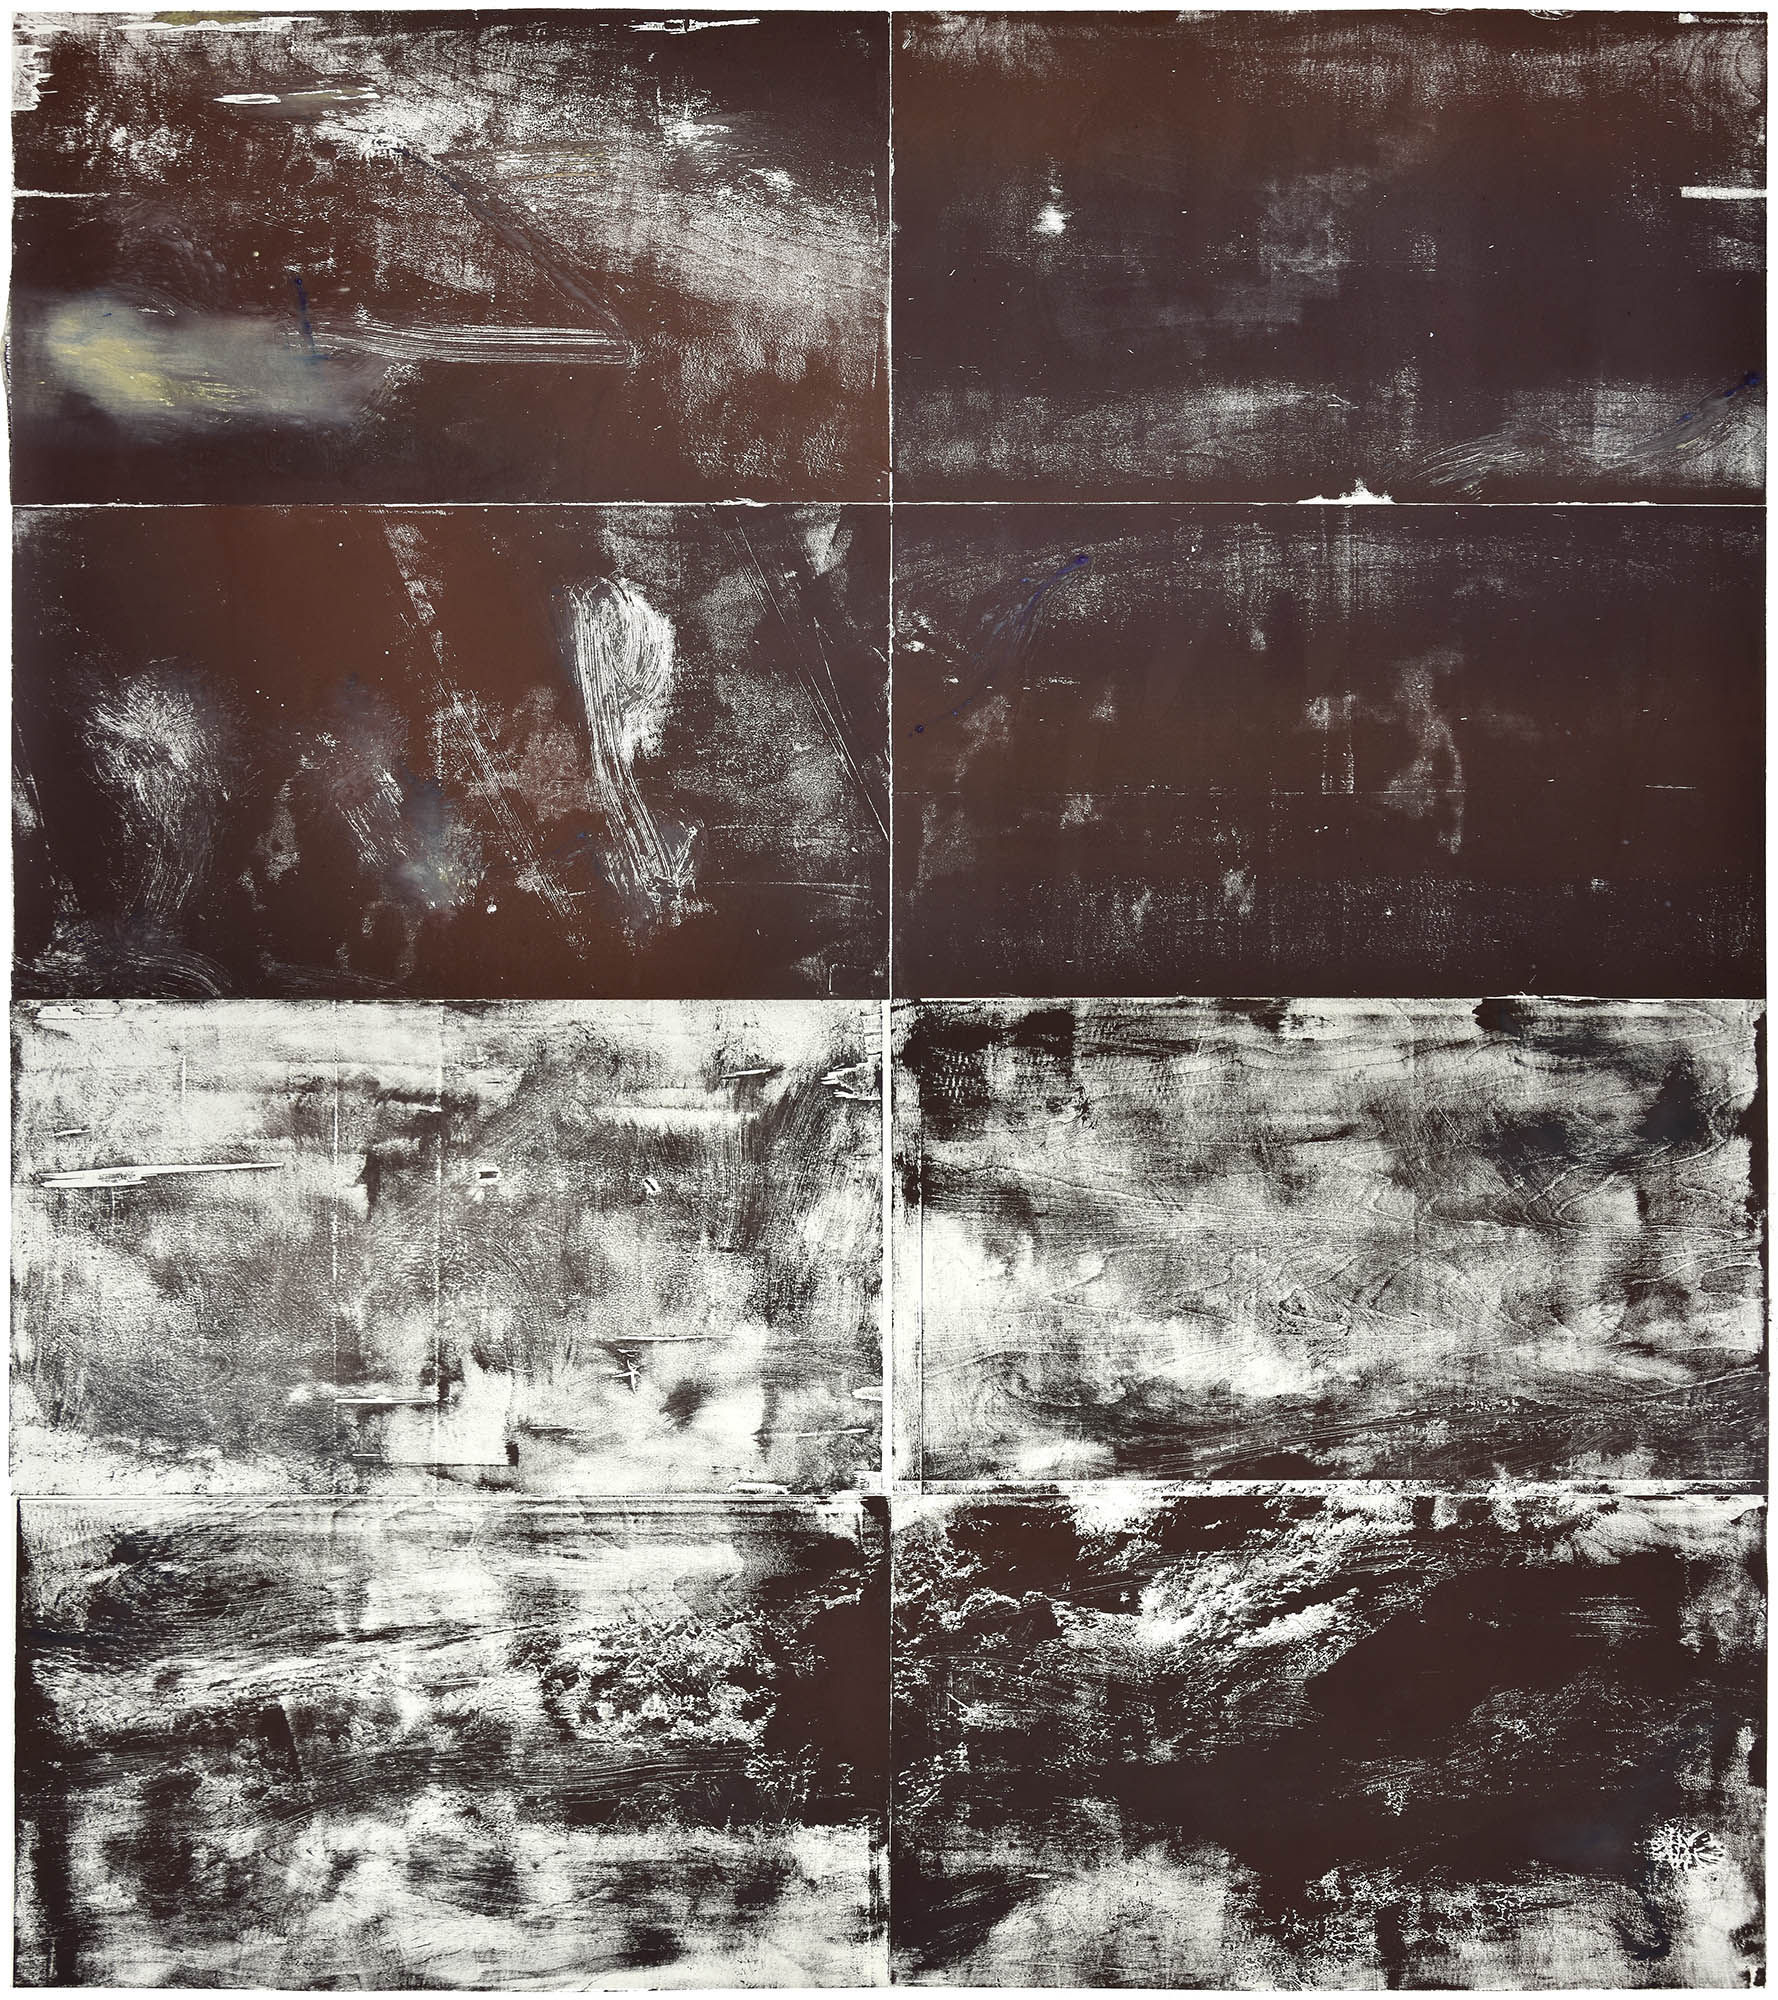 Erde, 2022, wood engraving (beech), 259 x 229 cm, Genaro Strobel